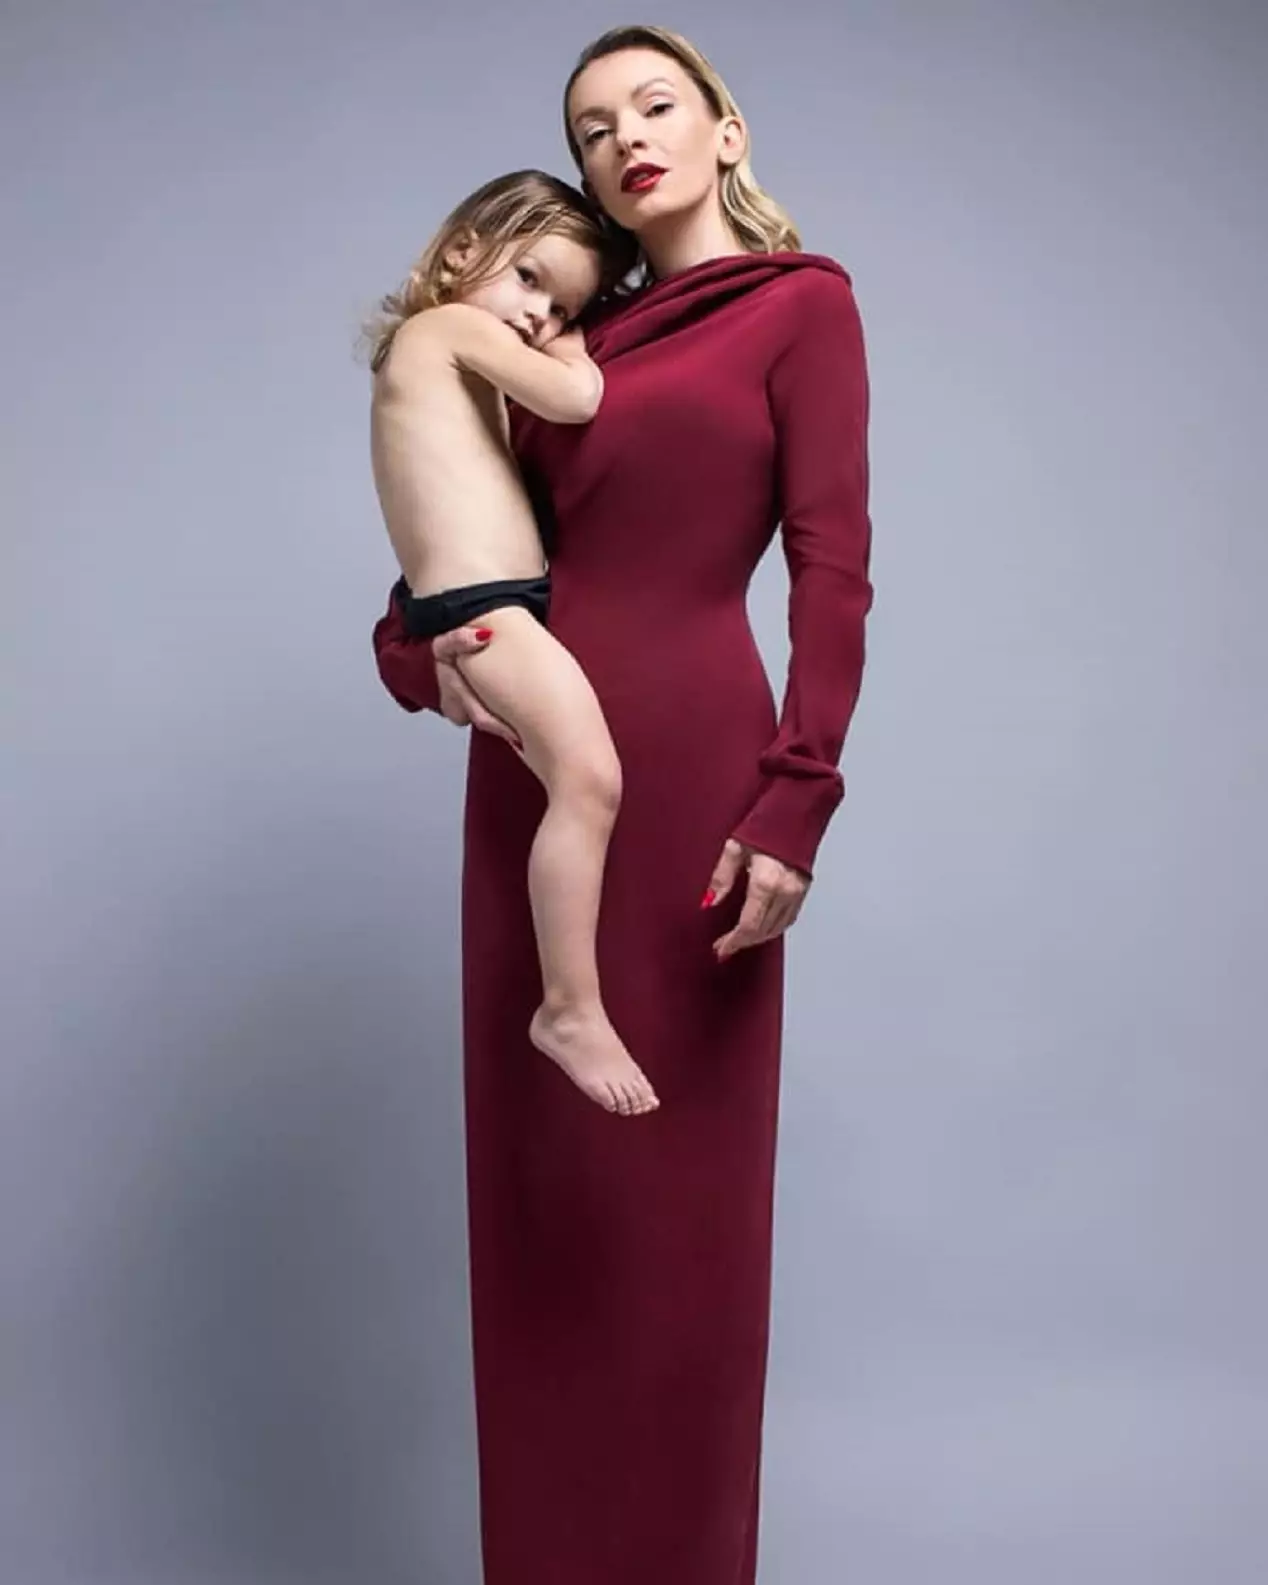 Поліна Неня з донькою